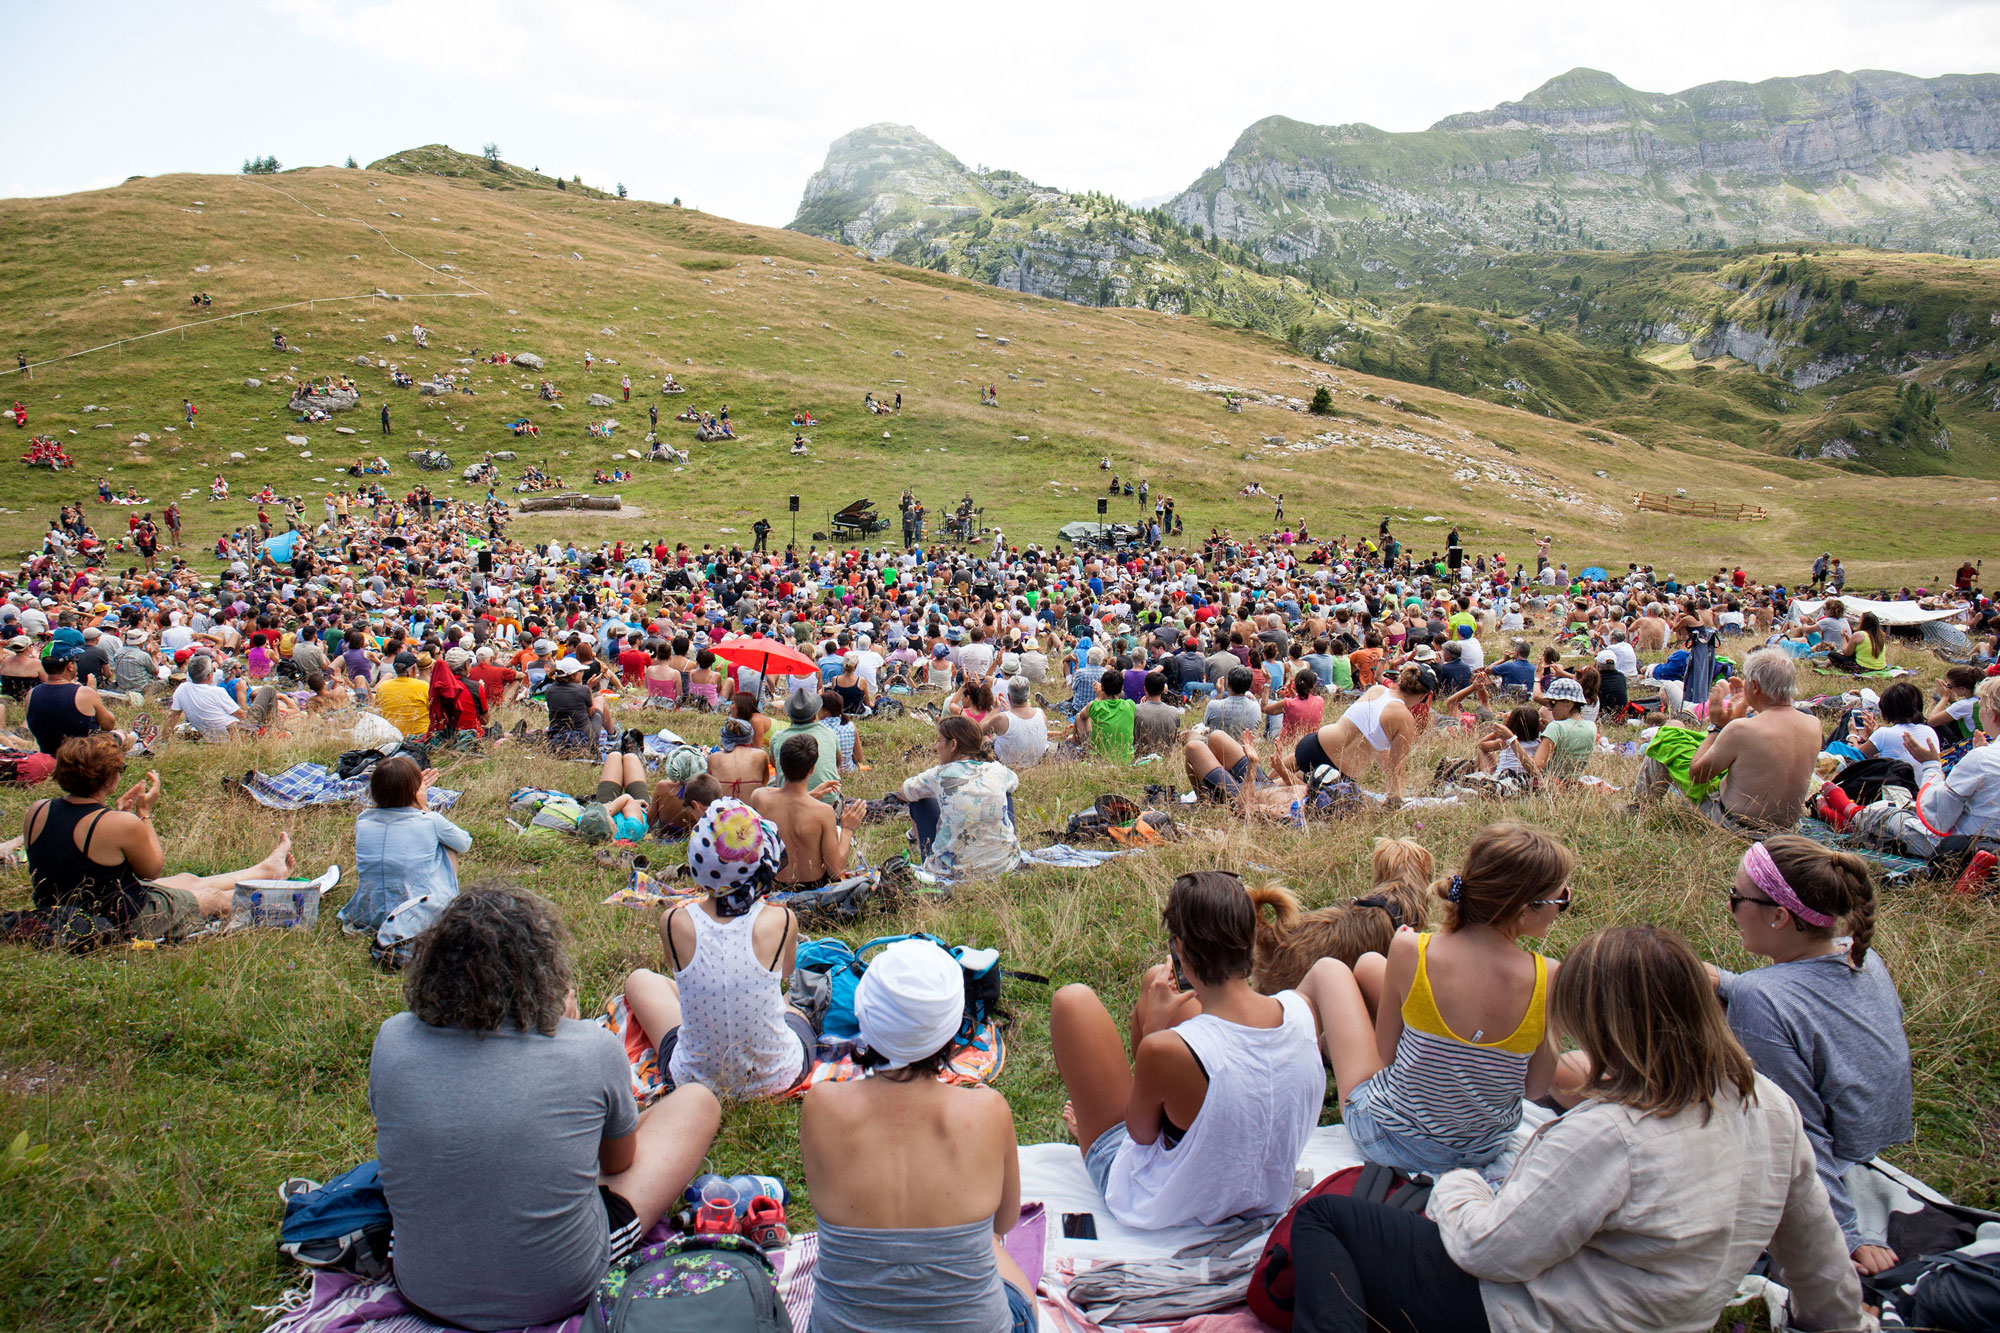 Publikum auf Picknickdecken vor Bergkulisse